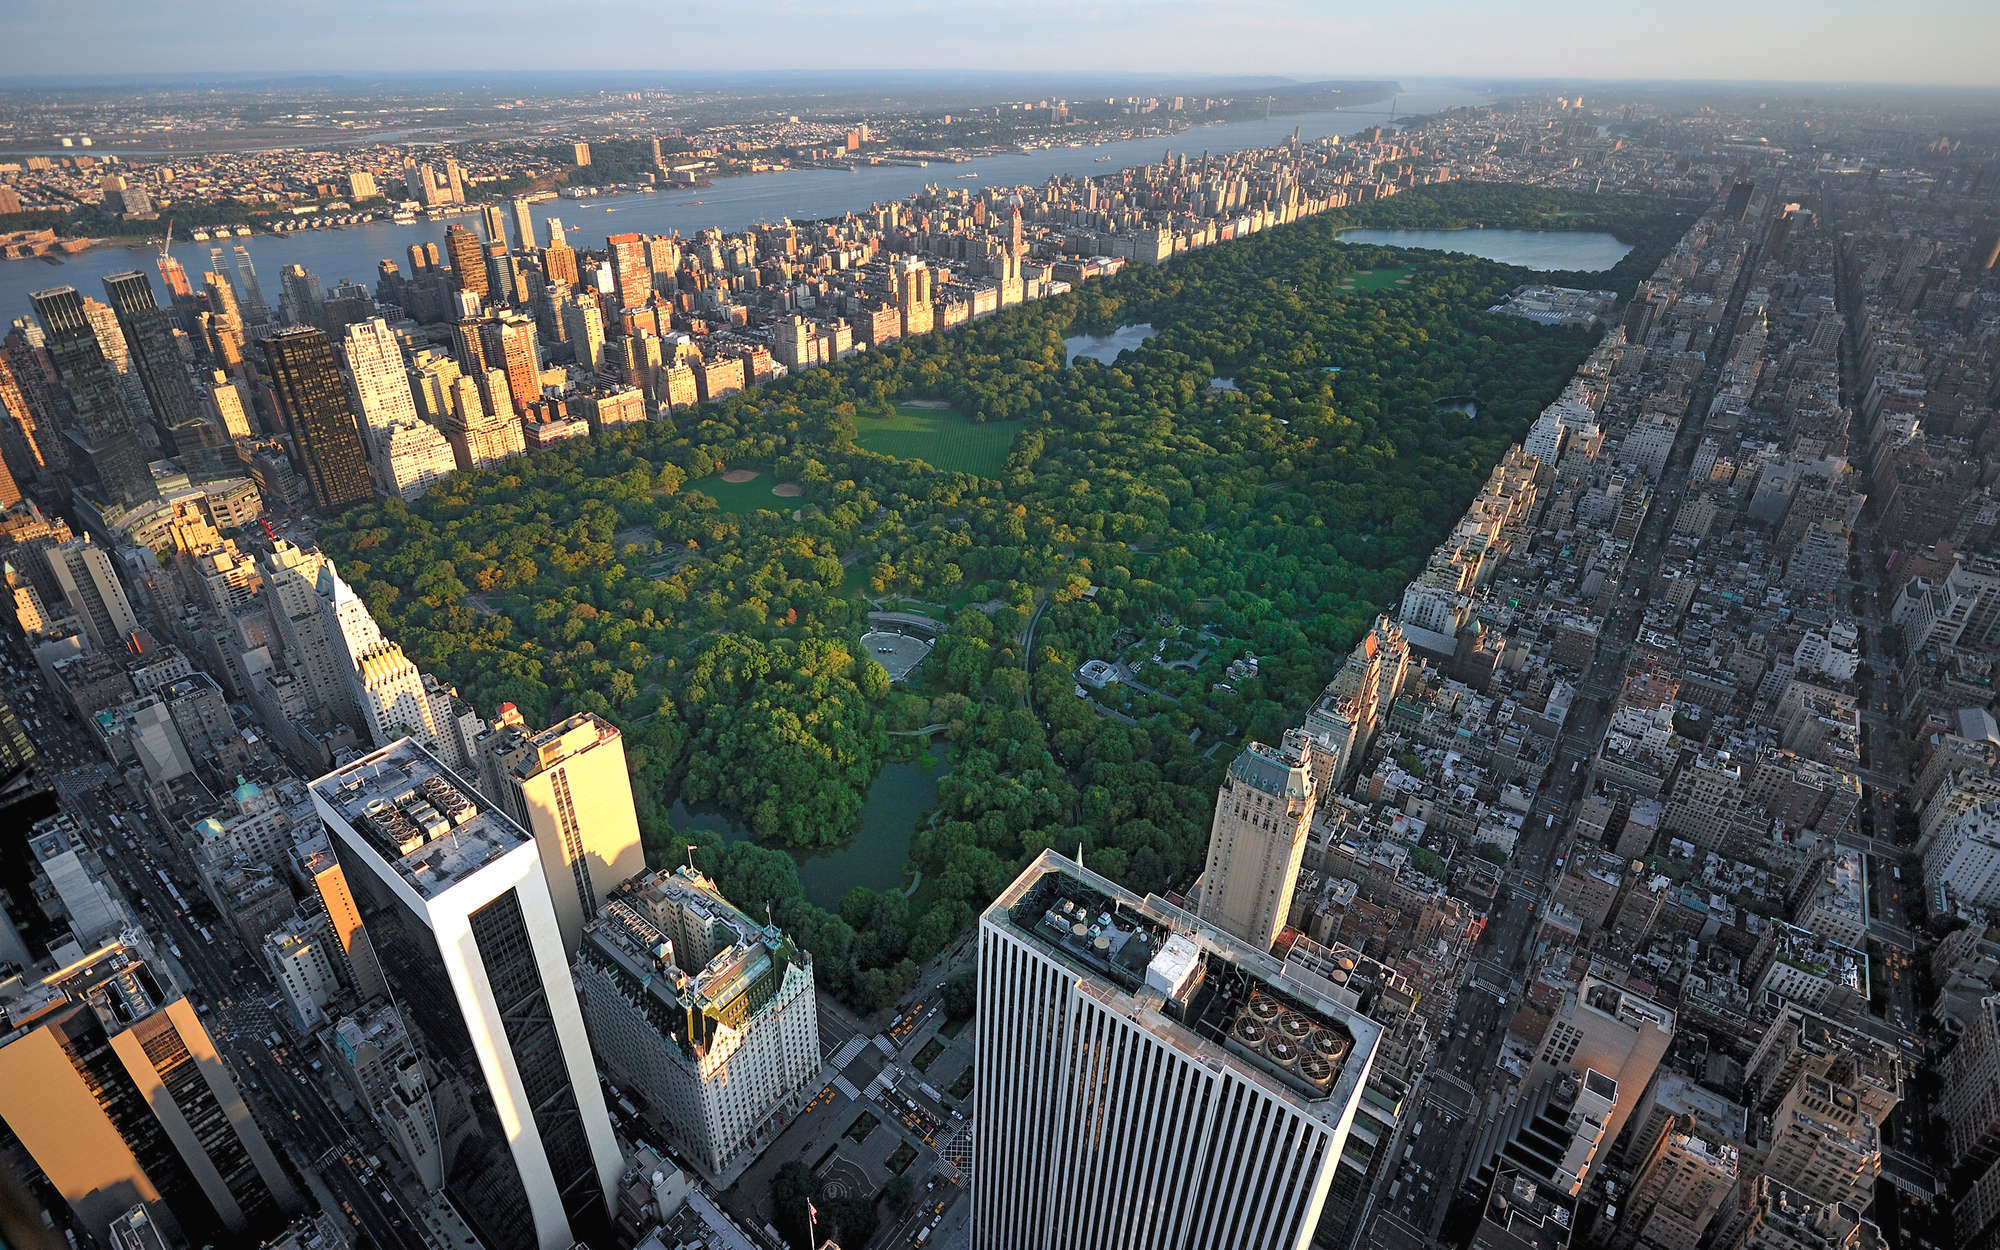             Fotomural Nueva York Central Park desde arriba - tejido no tejido liso mate
        